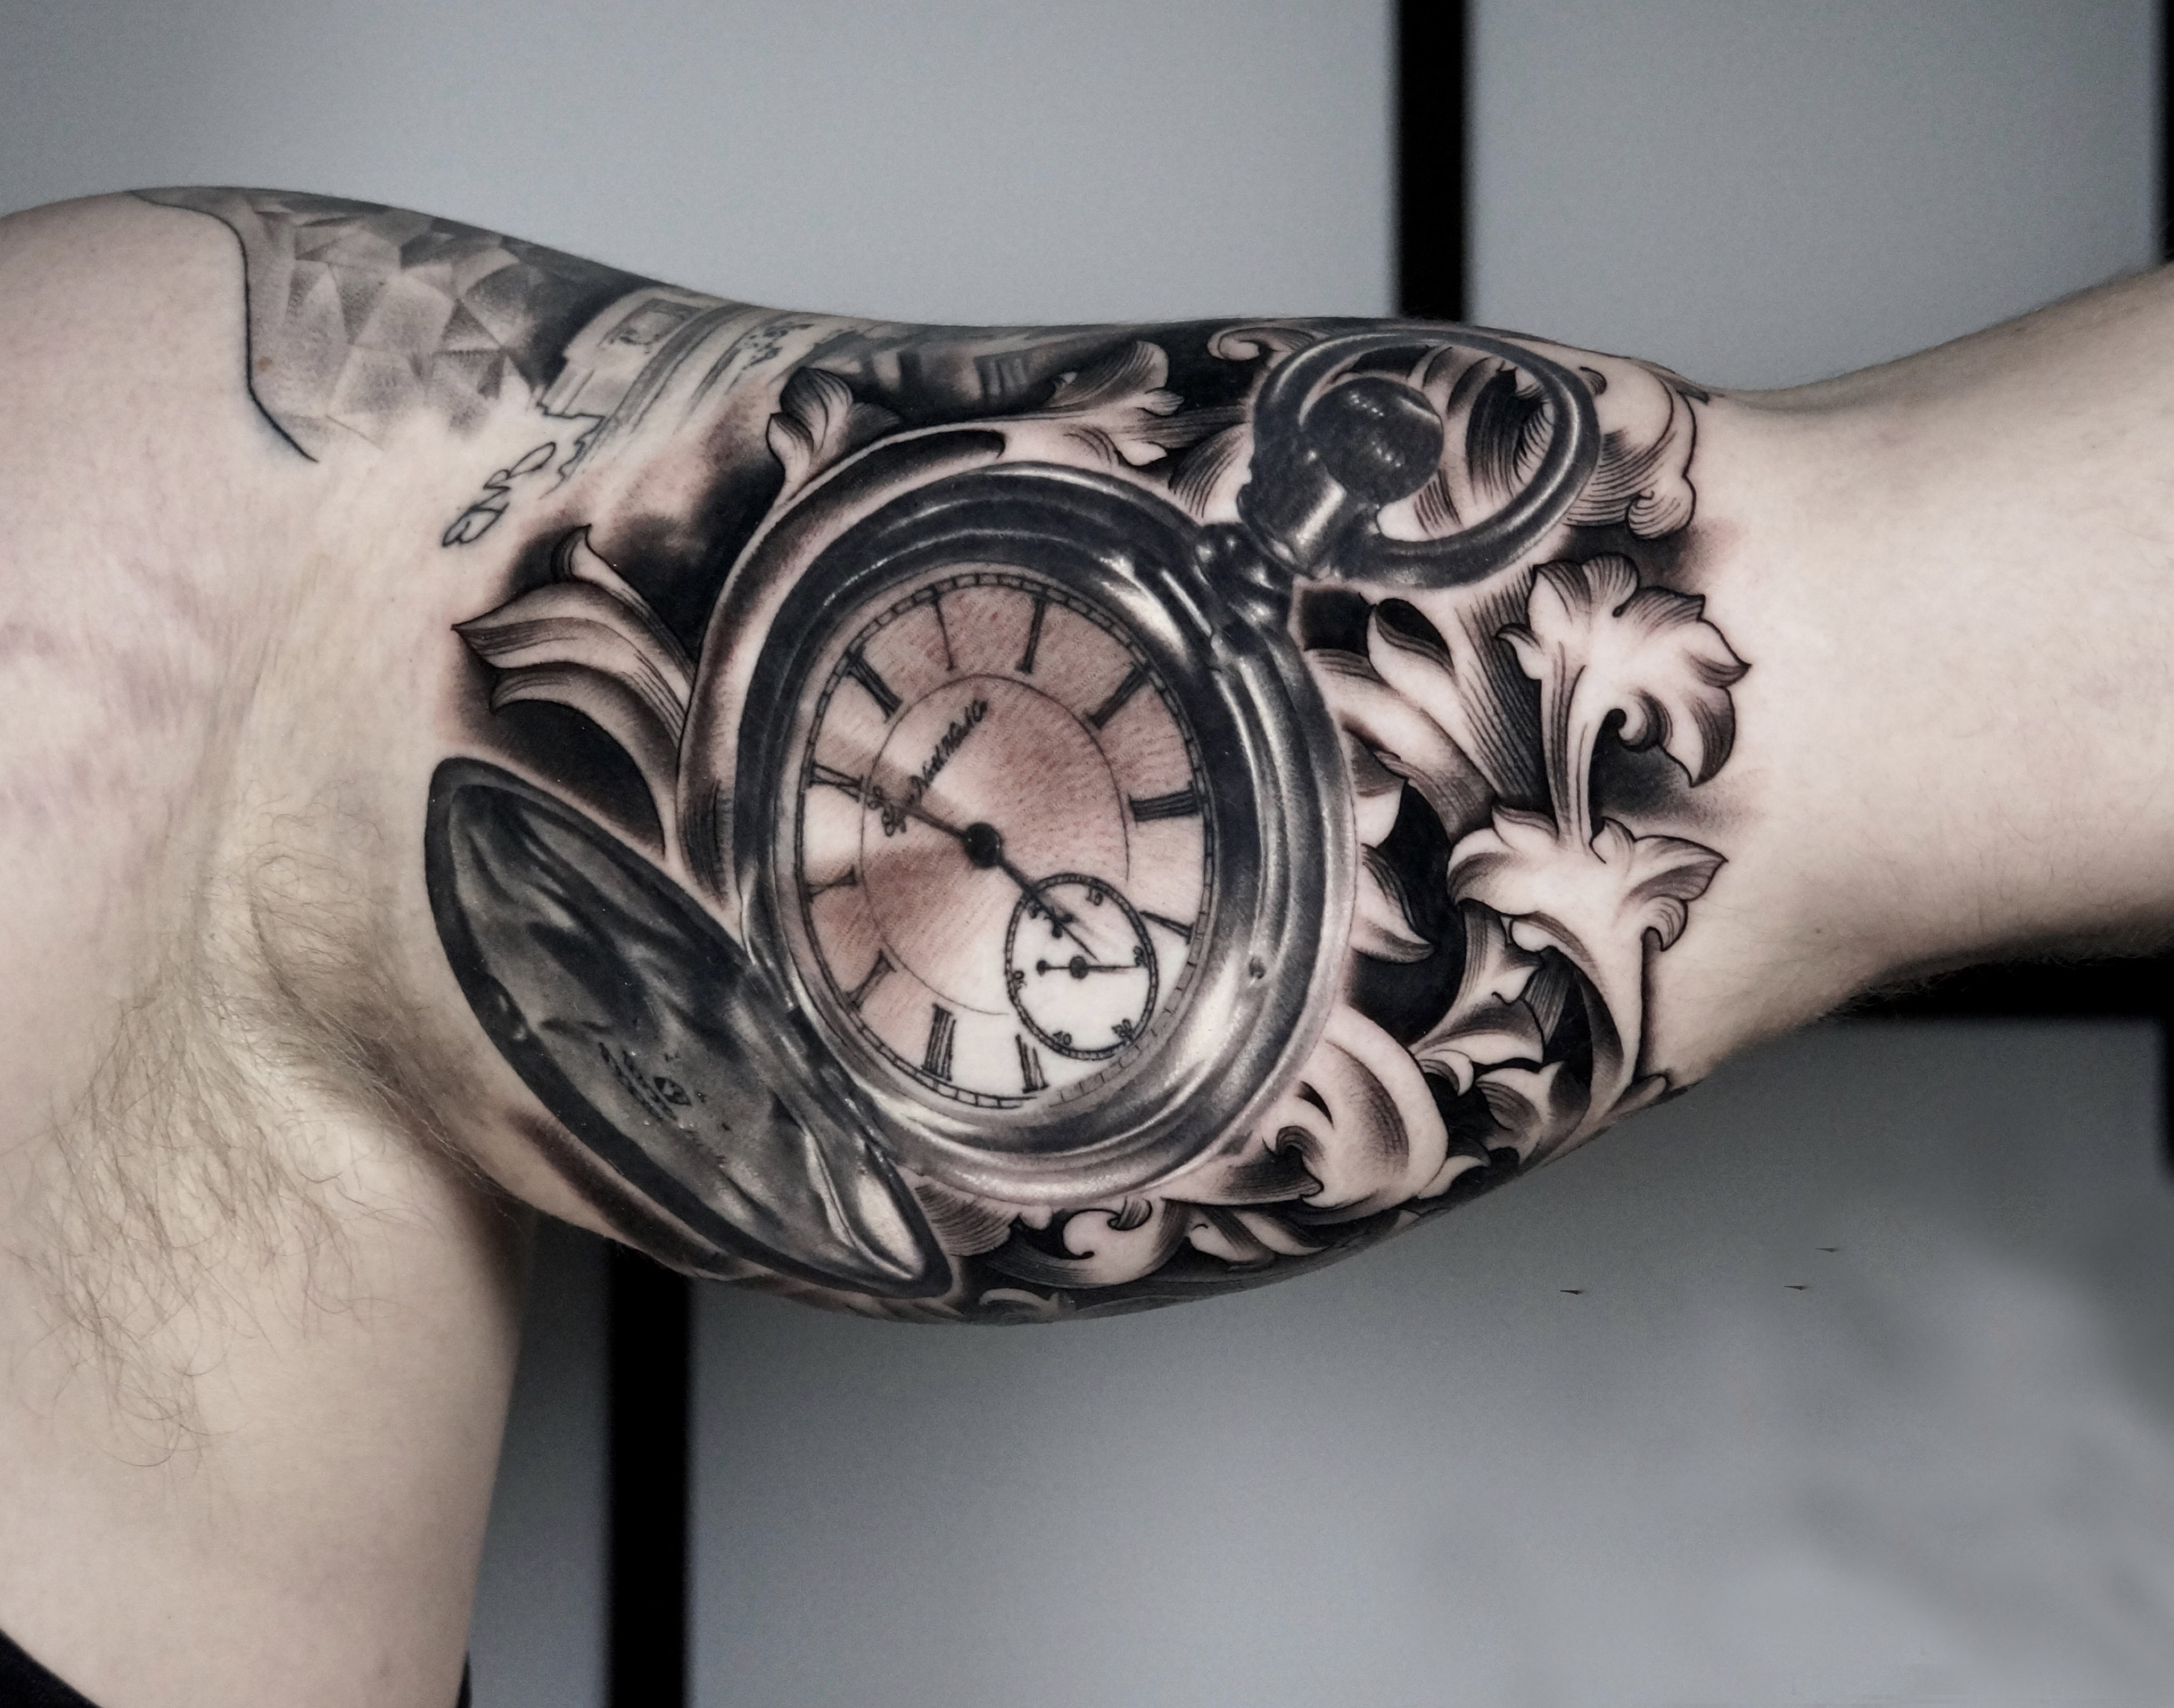 xăm đồng hồ la mã  Tatuagem Tatuagens Tatuagem braço